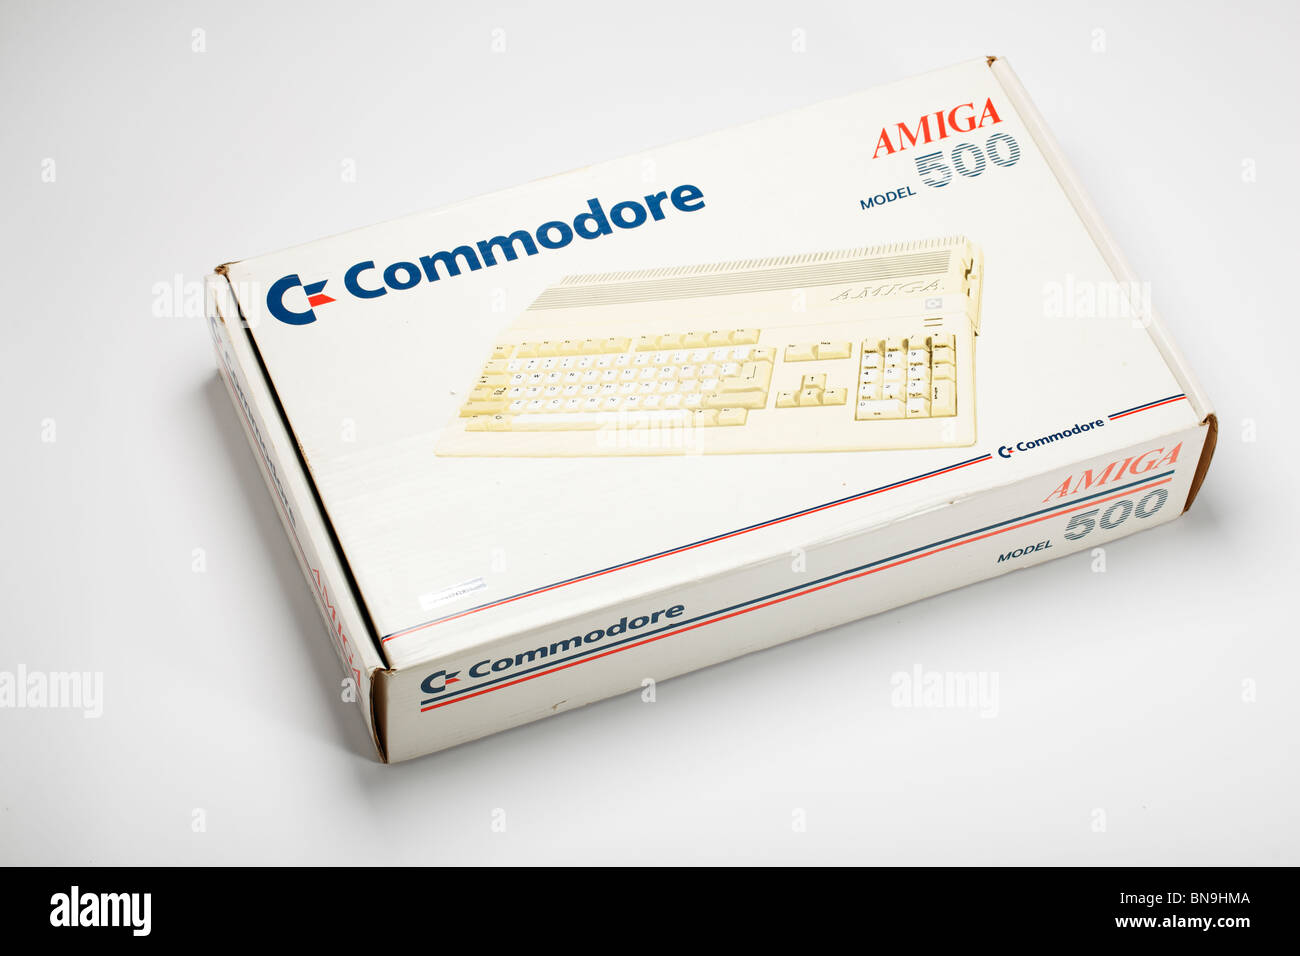 Fort de Commodore Amiga ordinateur à partir des années 1980 Banque D'Images